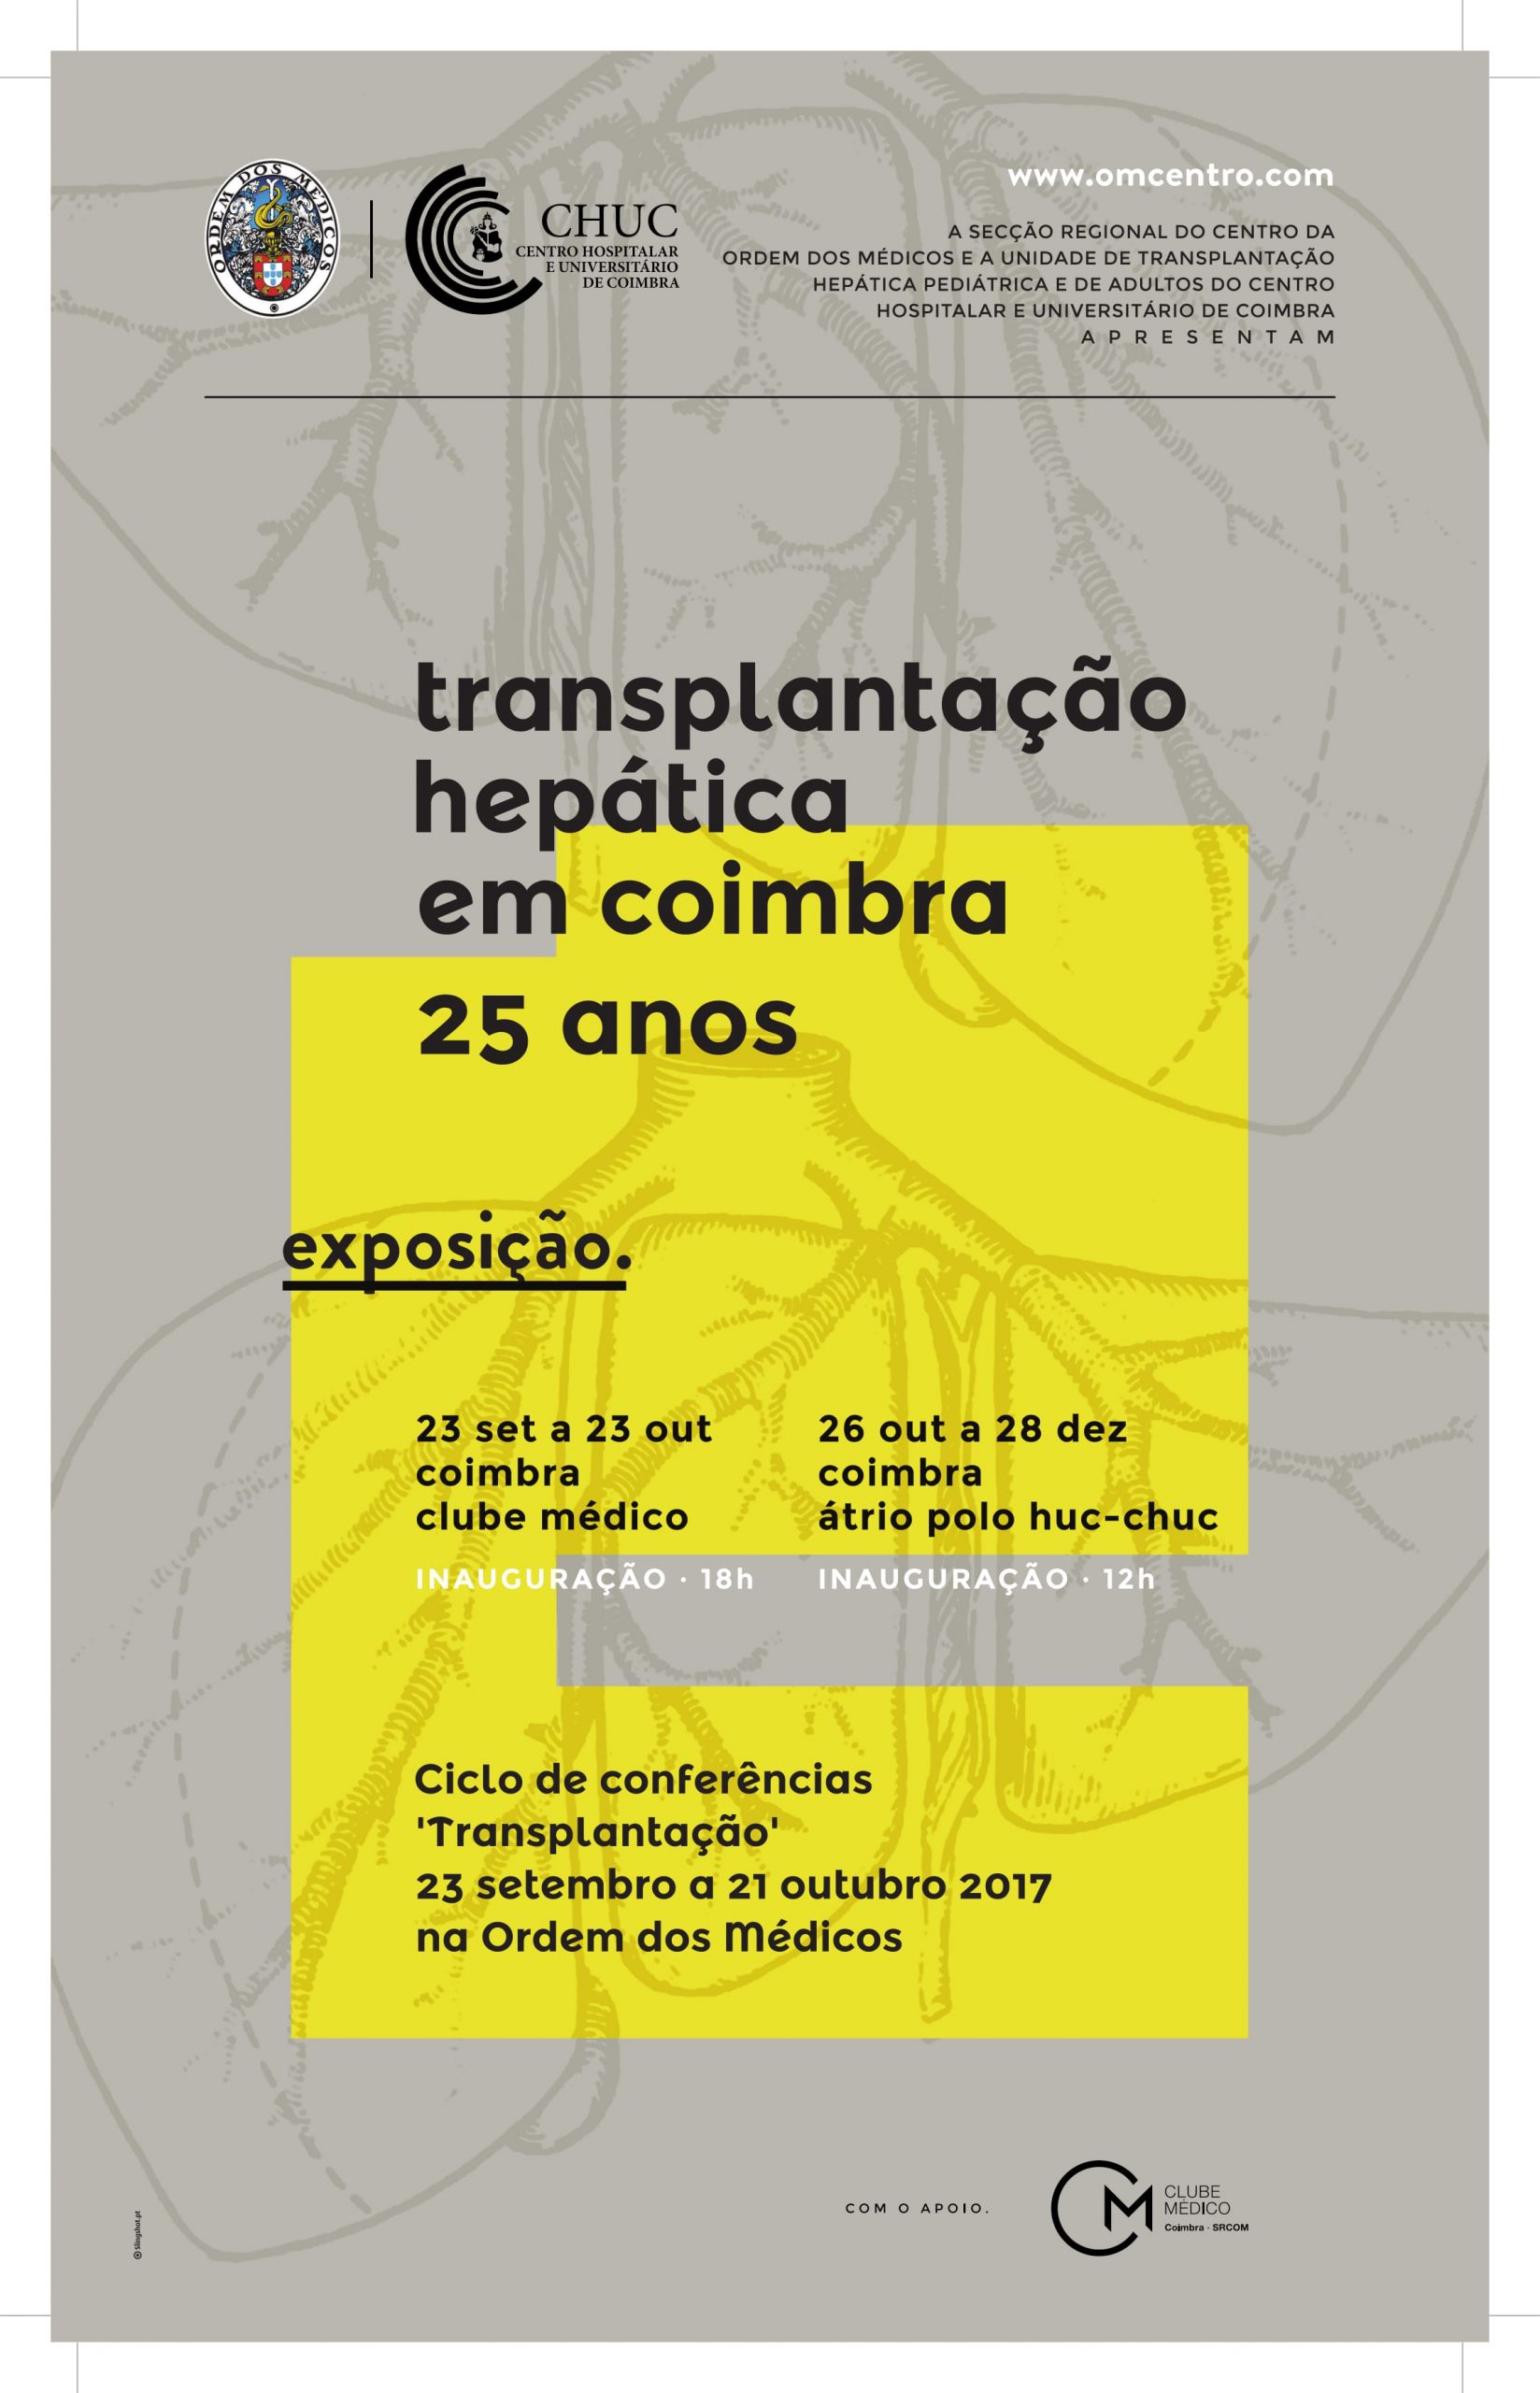 Exposição “Transplantação Hepática em Coimbra: 25 anos” e ciclo de conferências: “Transplantação”